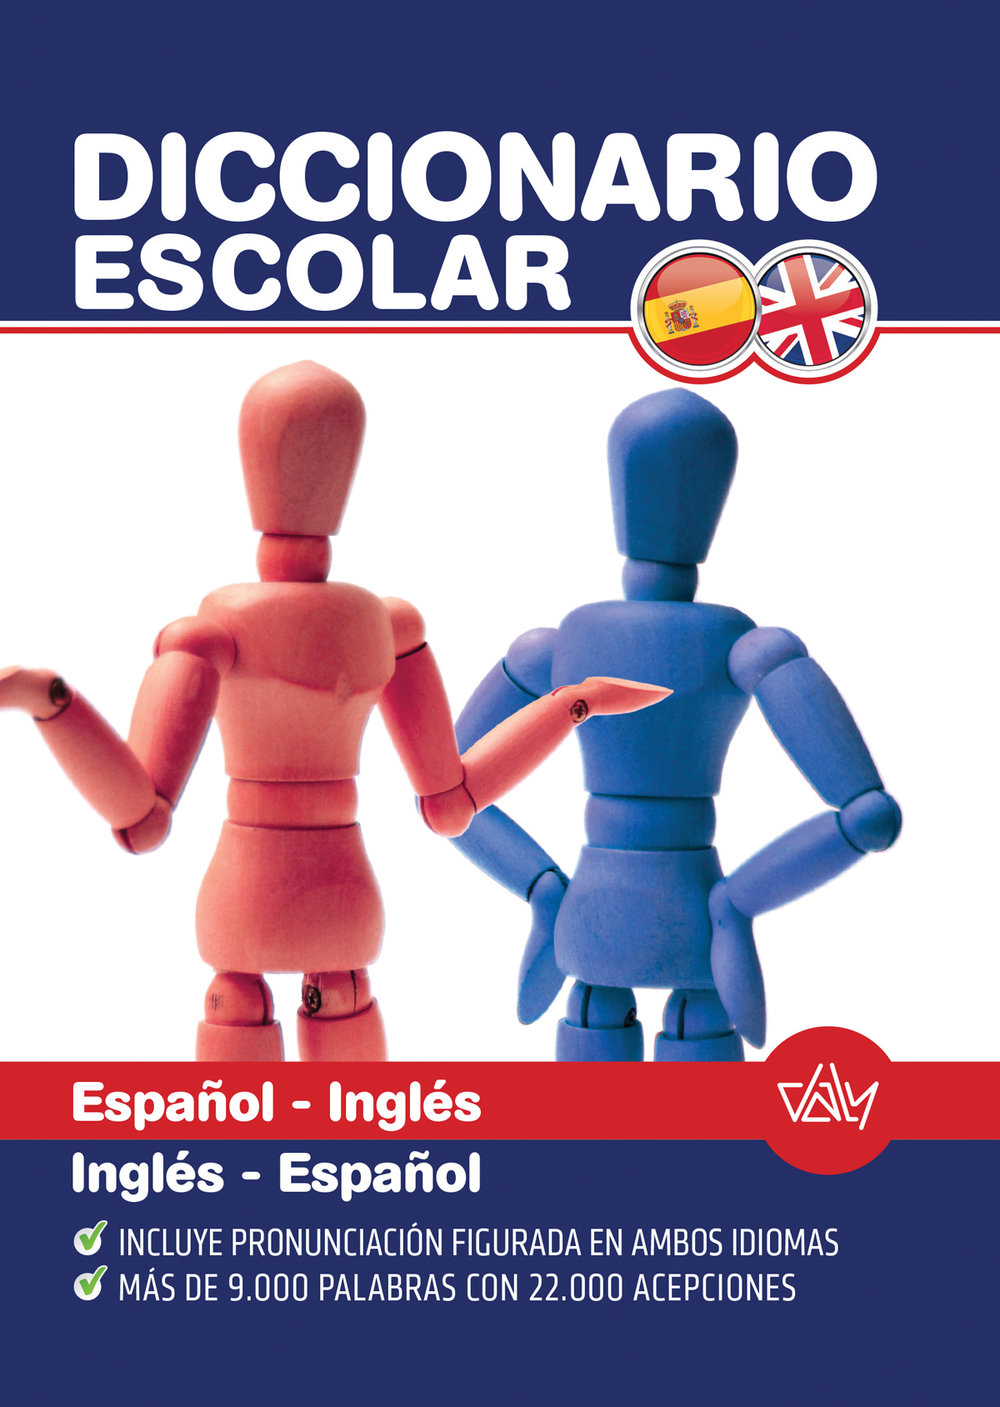 DICCIONARIO ESPANOL INGLES — Ediciones Daly